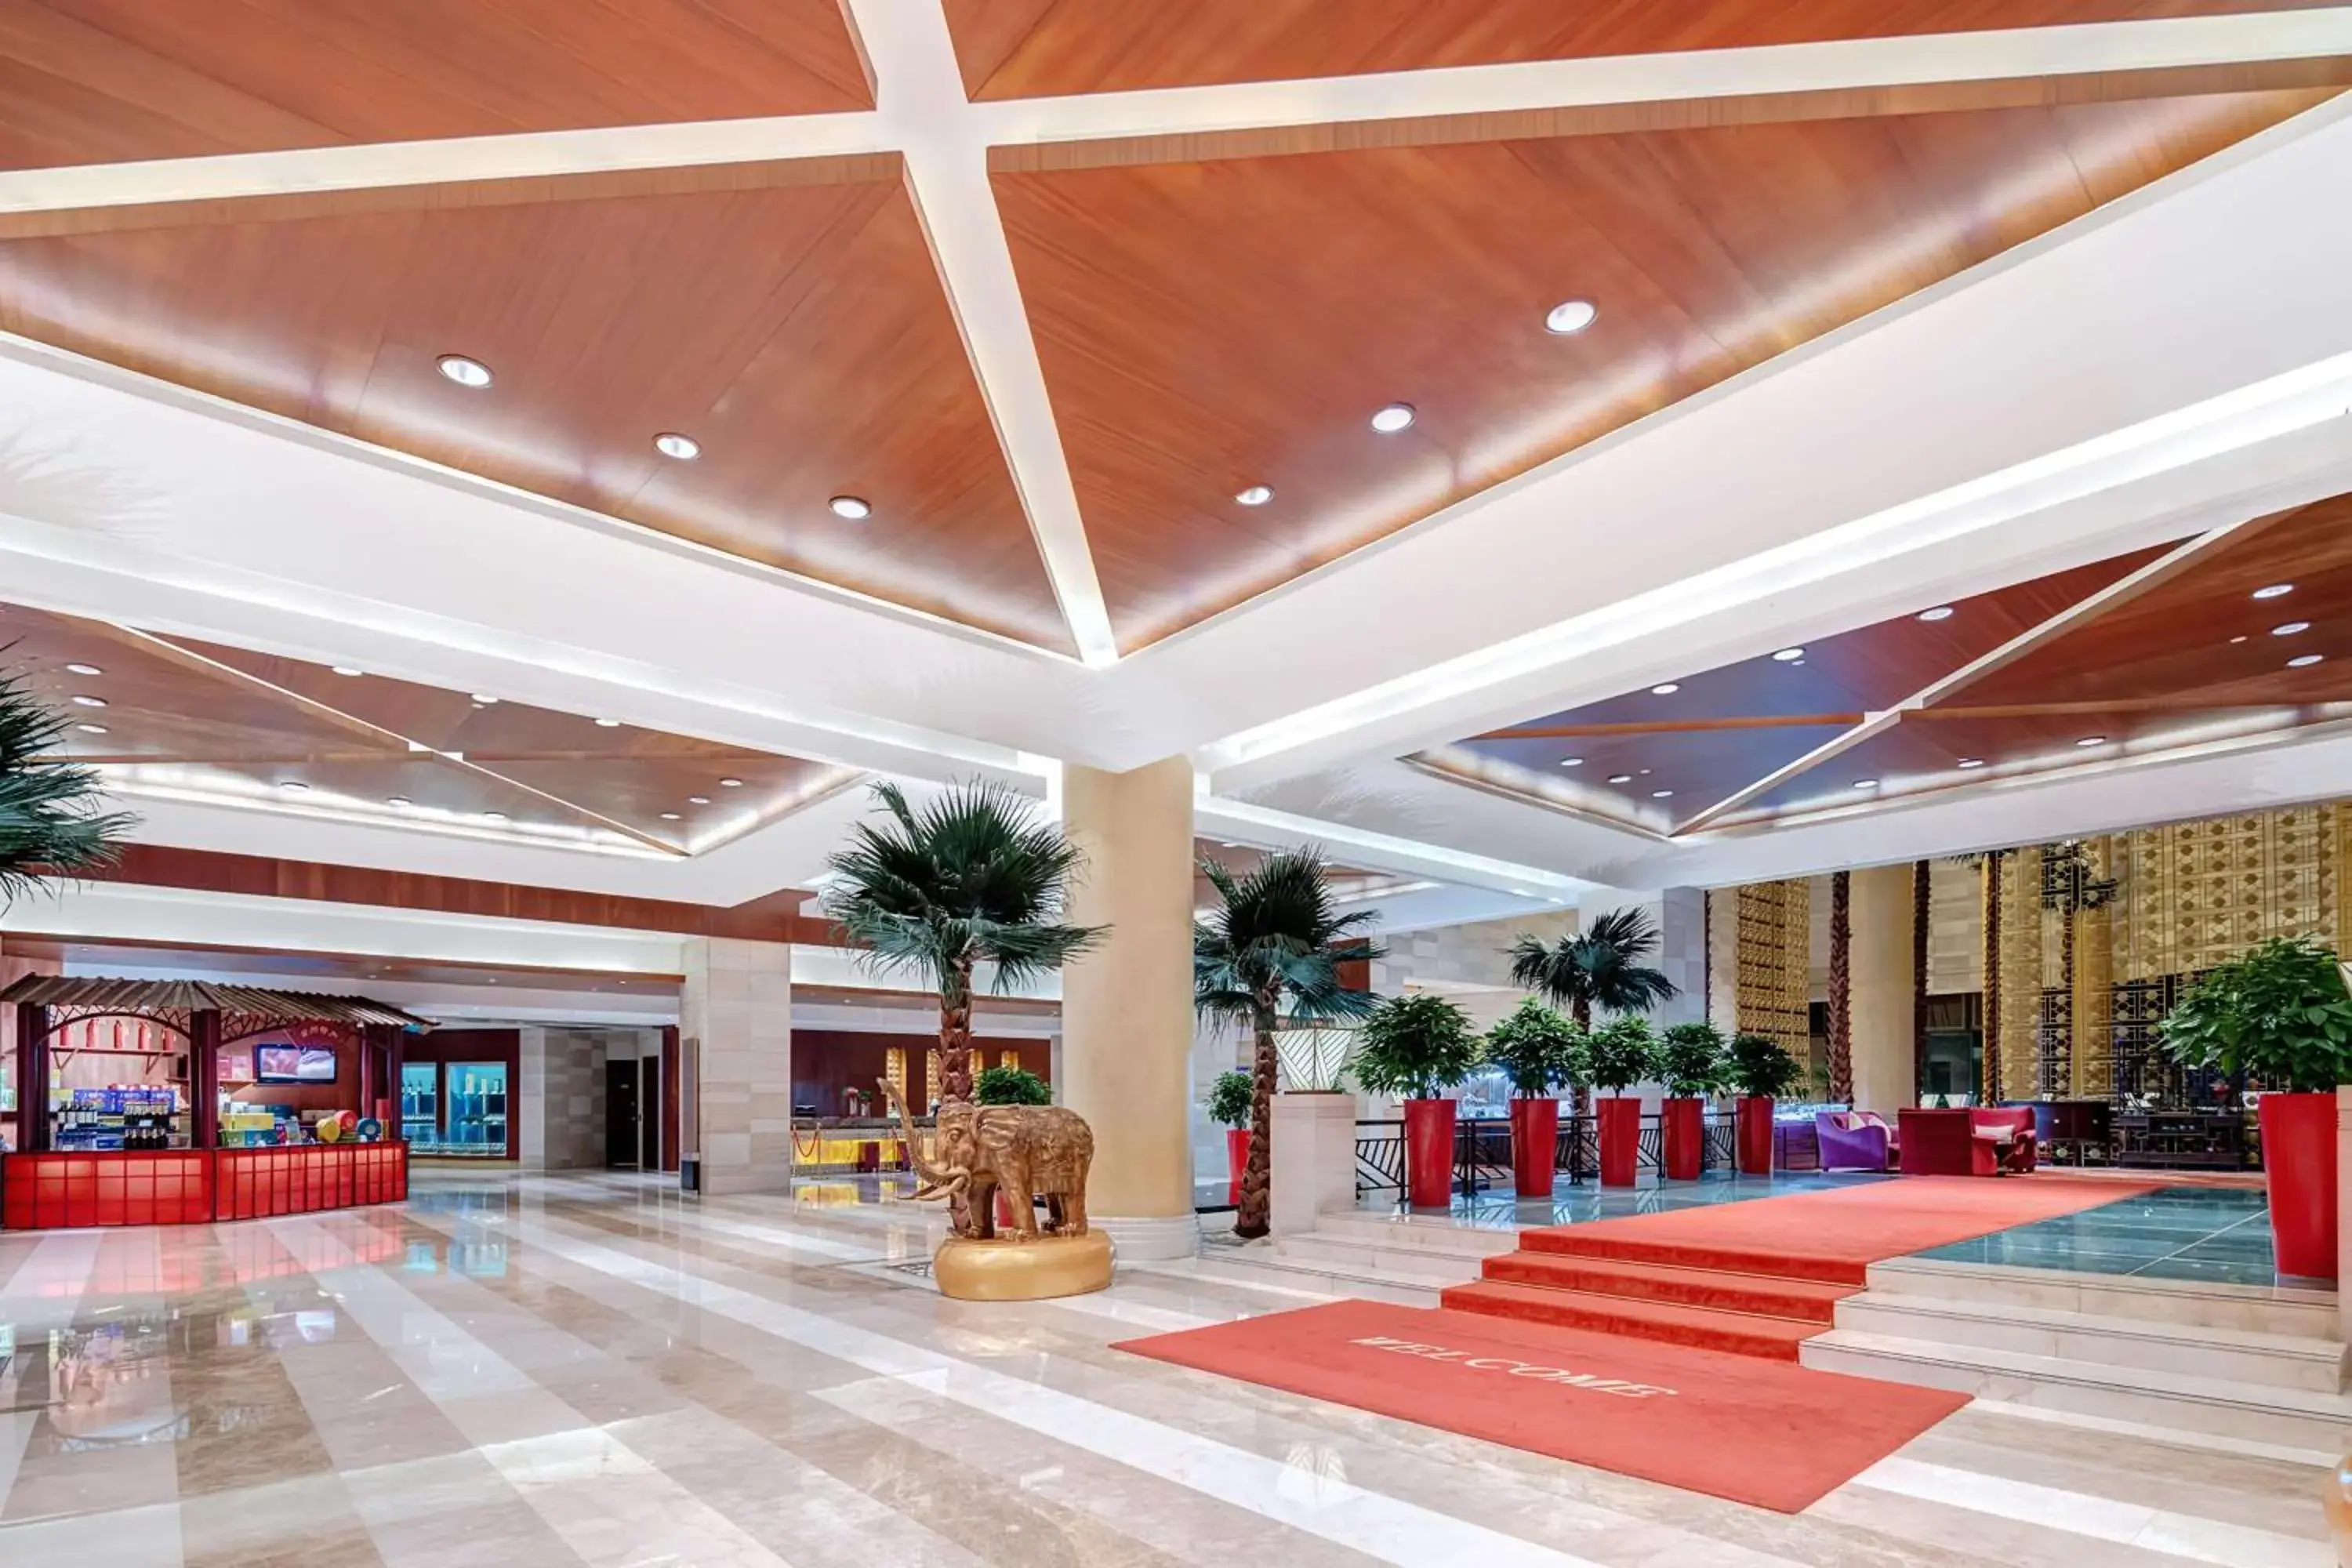 Lobby or reception in Fudu Grand Hotel Changzhou